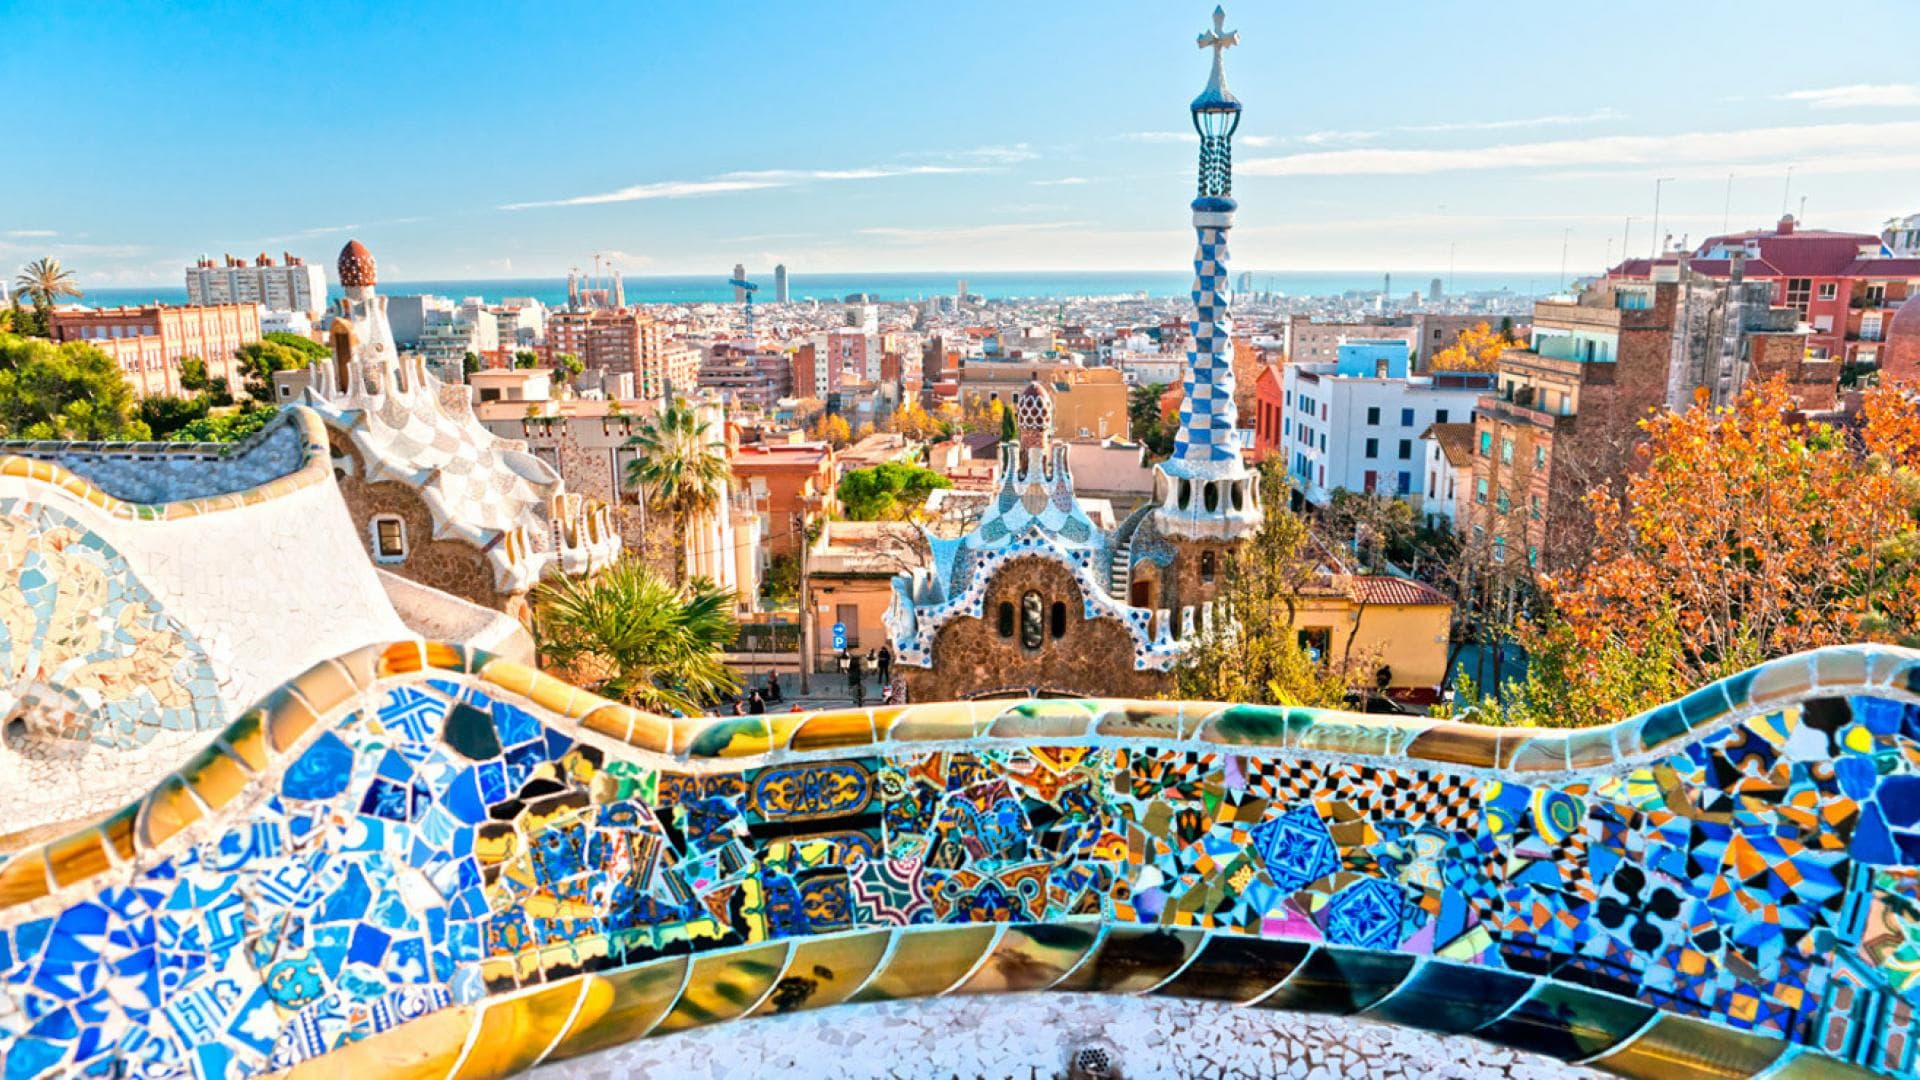 Barcelona City Desktop Wallpapers - Top Free Barcelona City Desktop